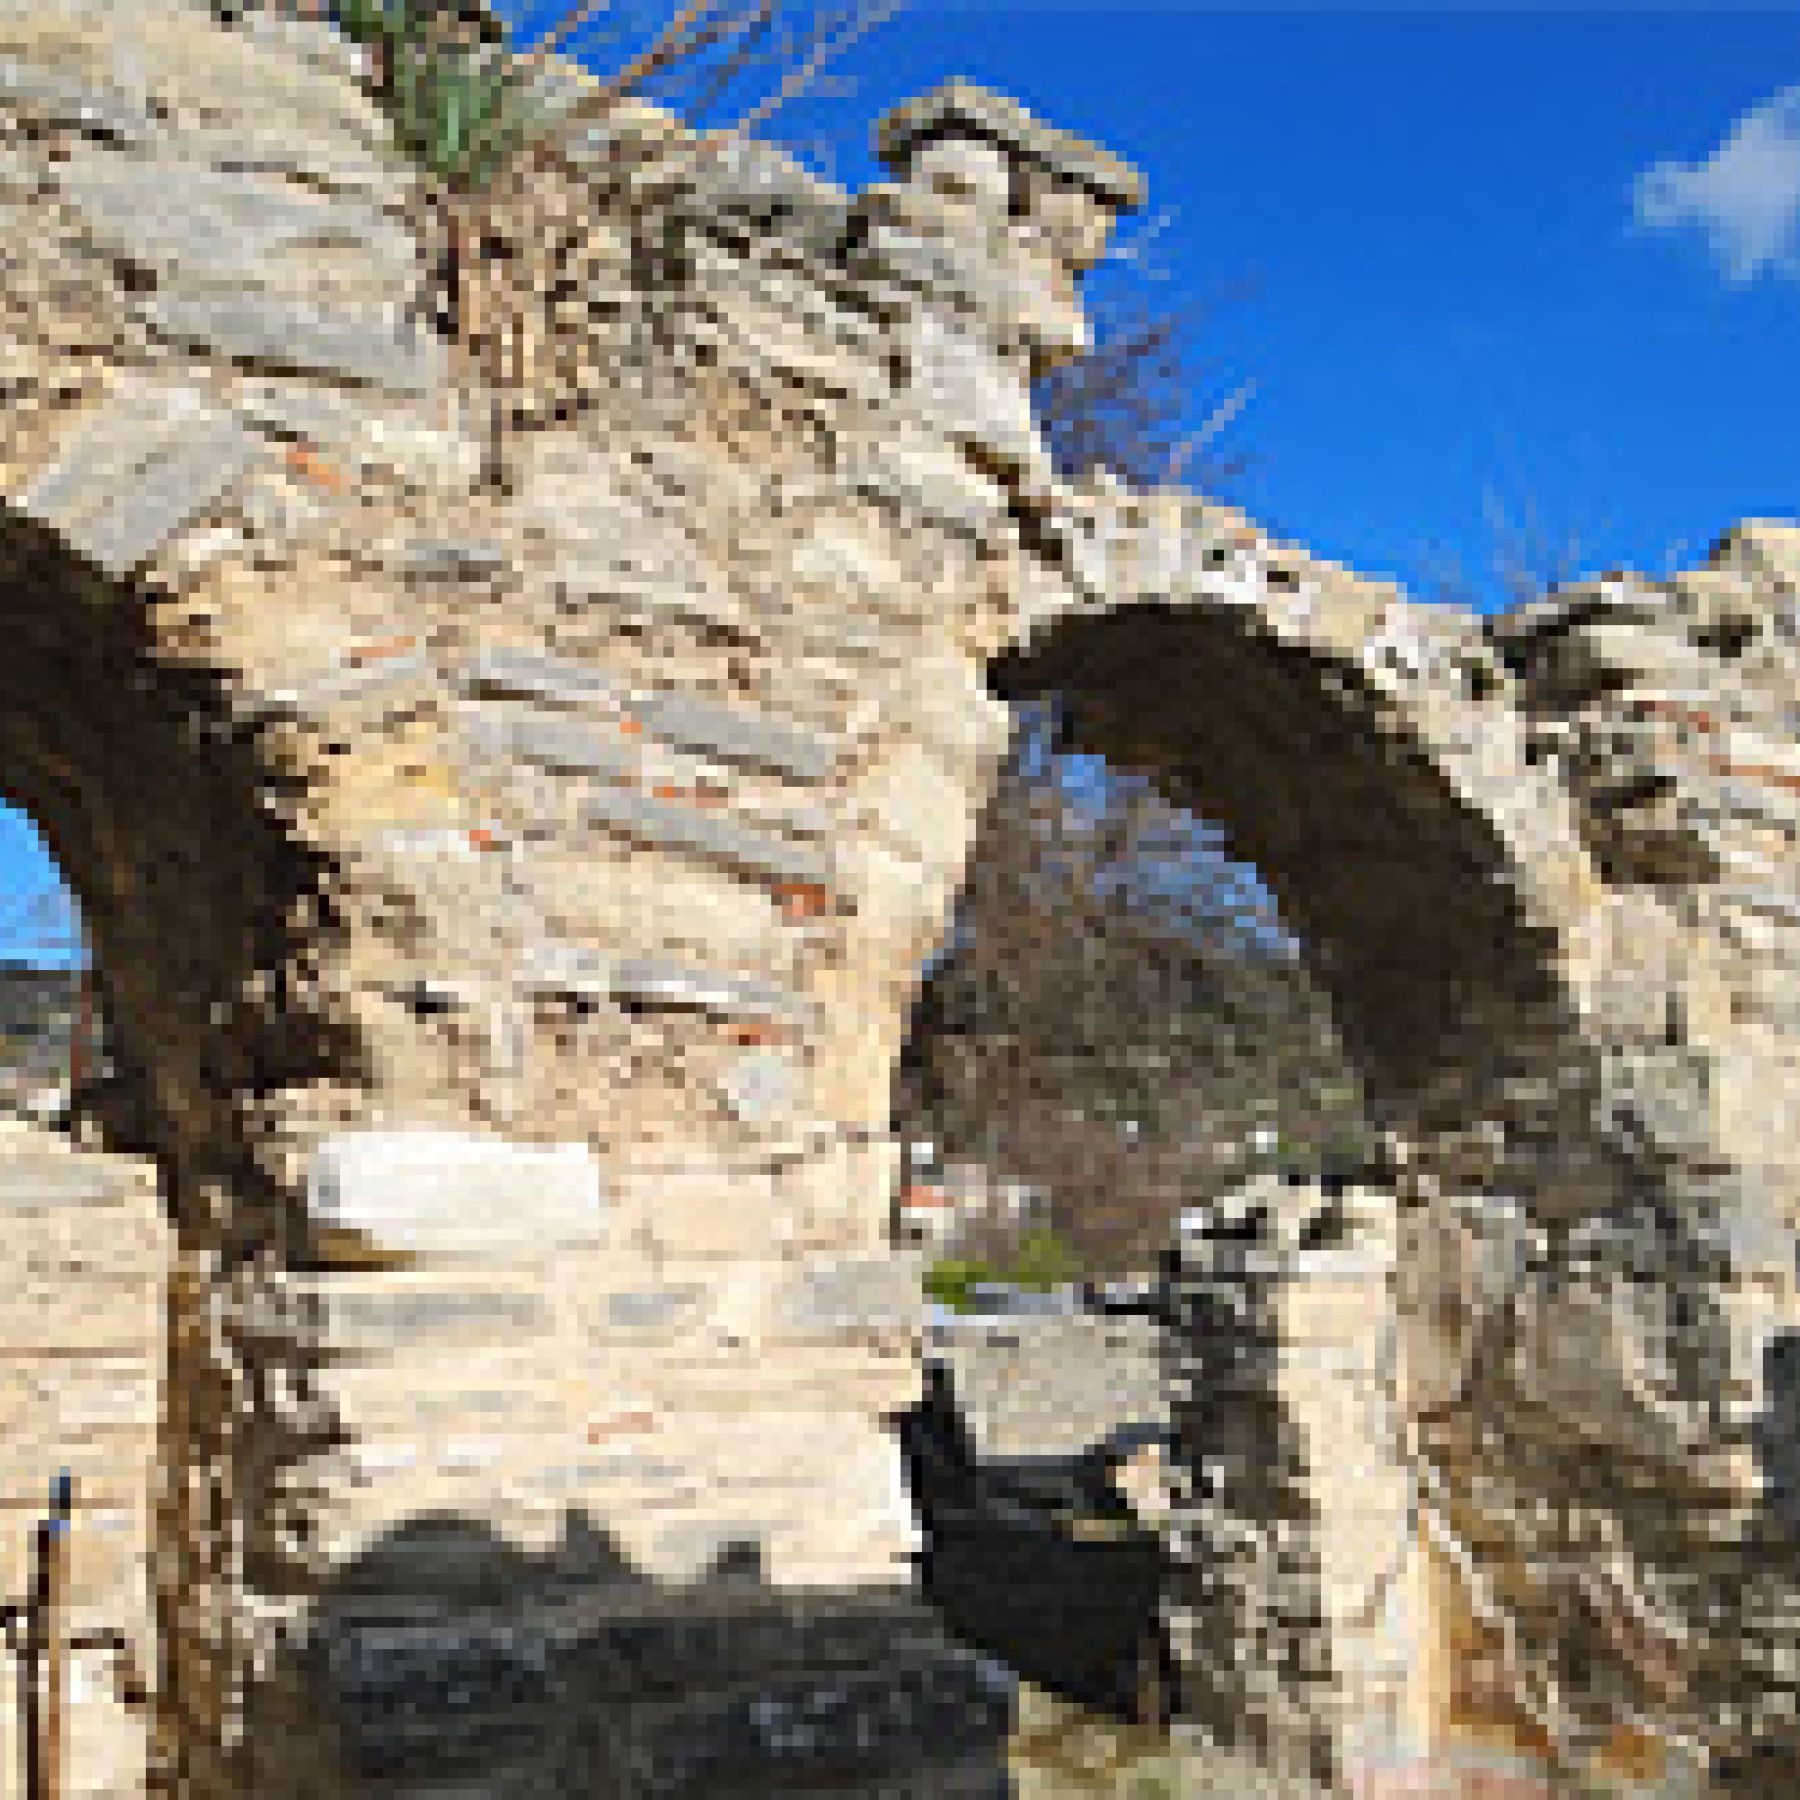 Ayios Theodoros 8th century Church in Cyprus